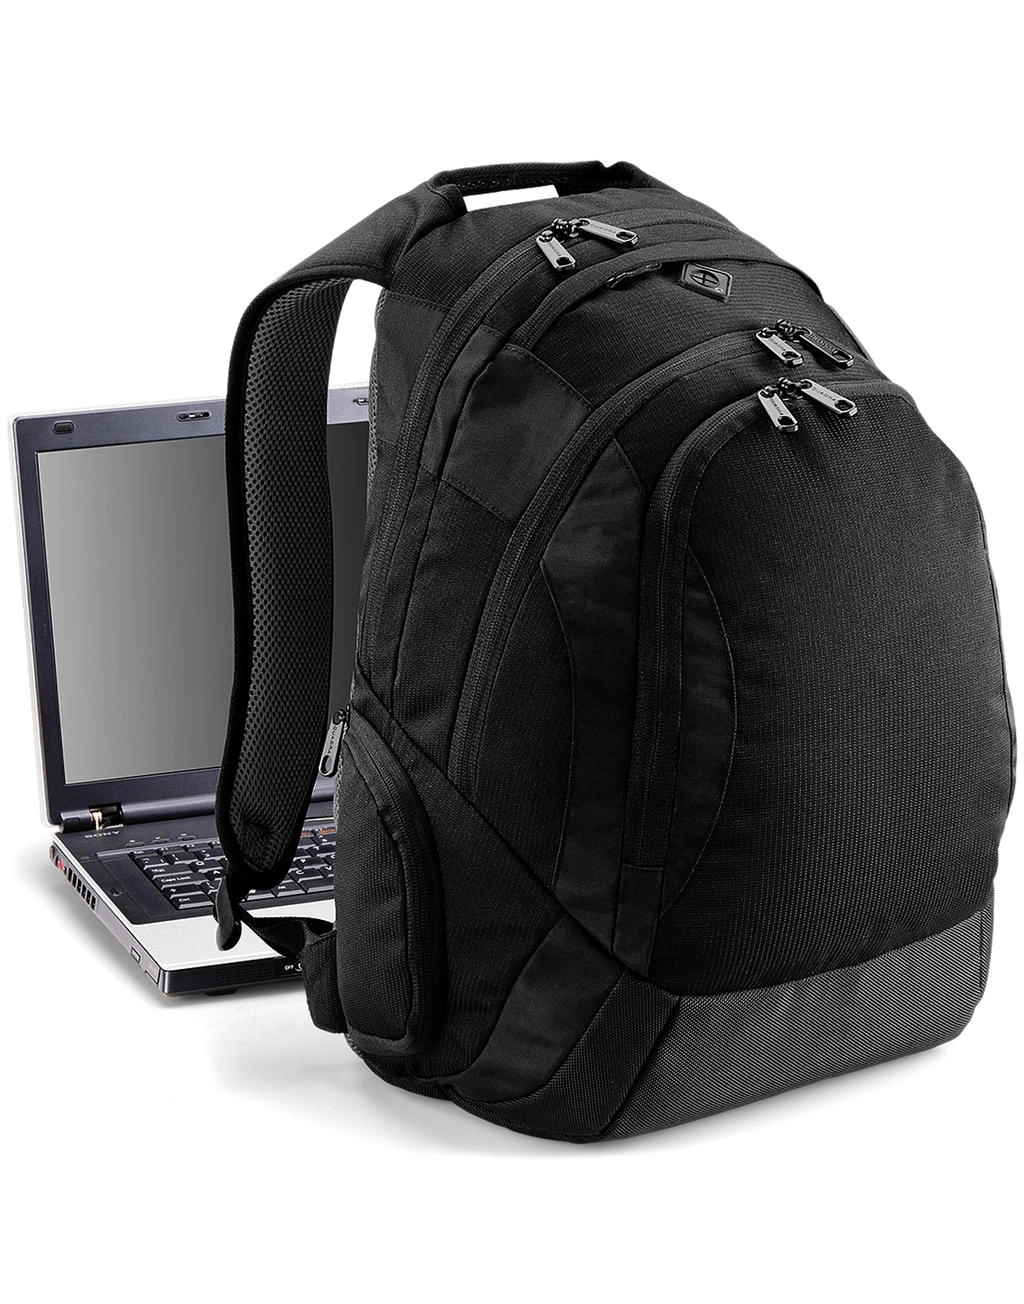 Vessel™ Laptop Backpack zum Besticken und Bedrucken mit Ihren Logo, Schriftzug oder Motiv.